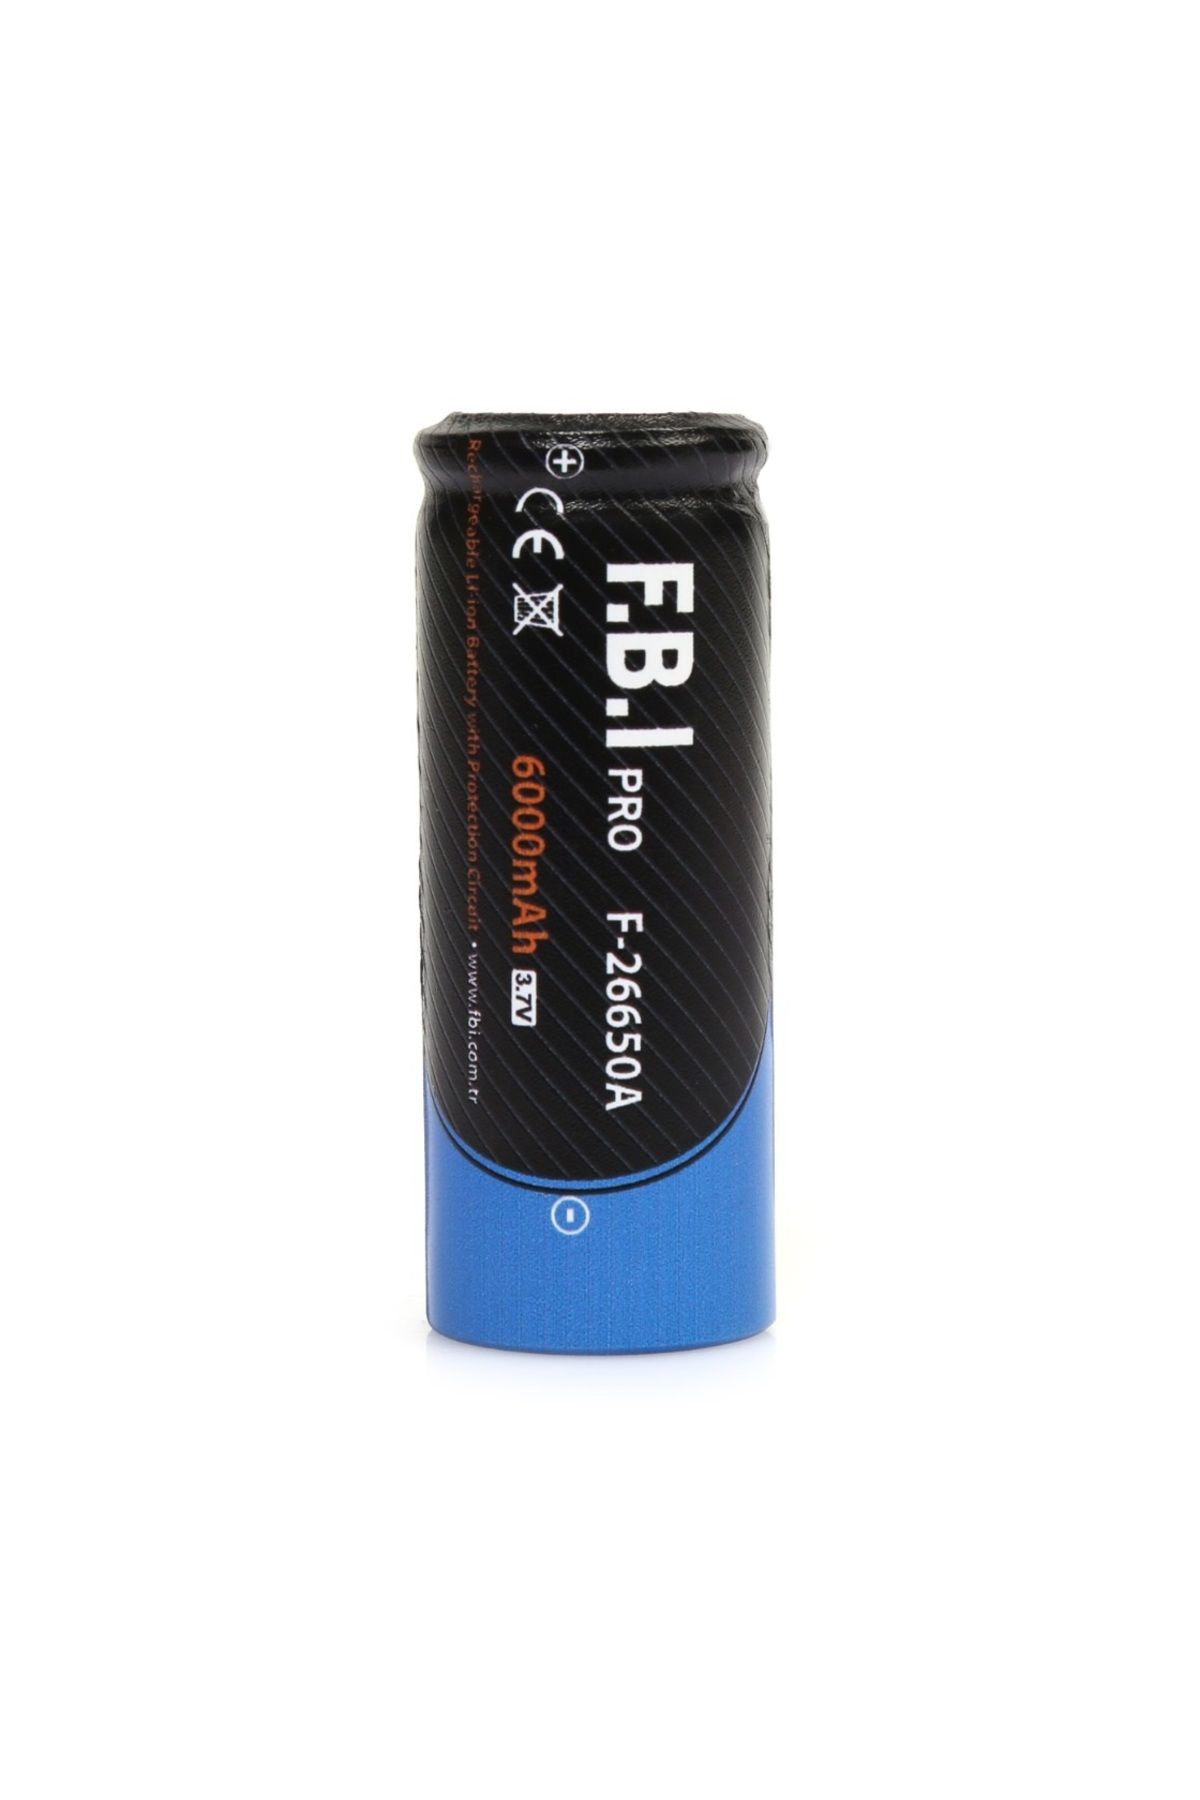 FBI F.B.I 26650 3.7V 6000mAh Şarj Edilebilir Li-ion Pil